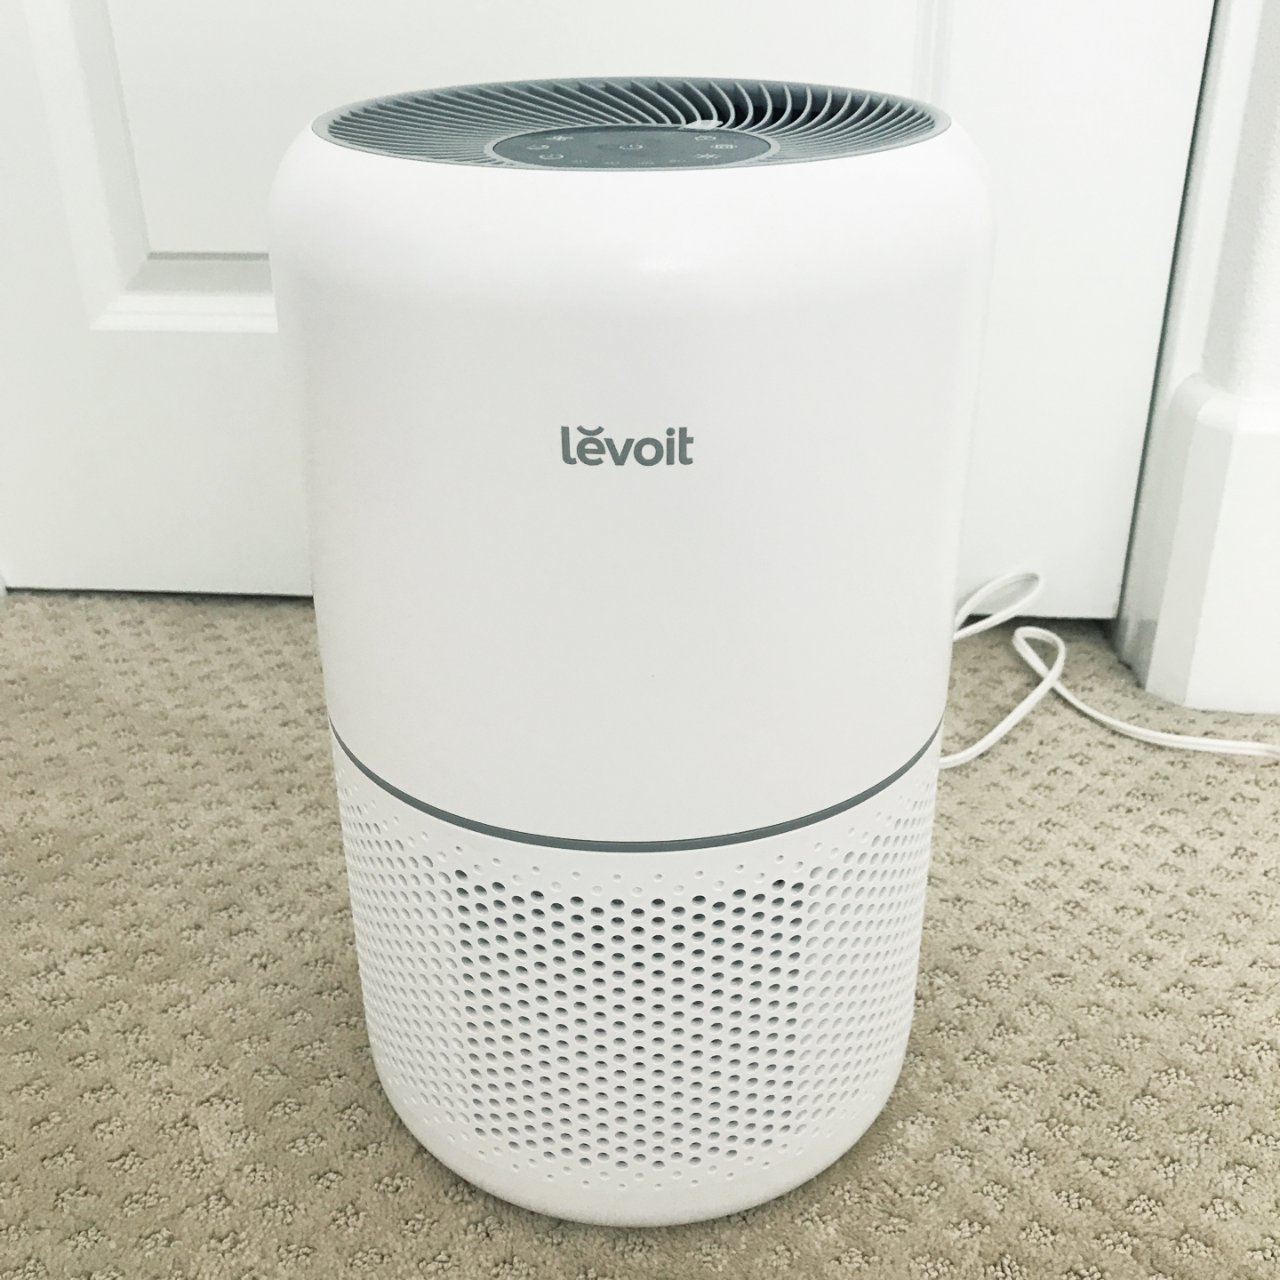 levoit,Amazon.com: LEVOIT Air Purifier for Home